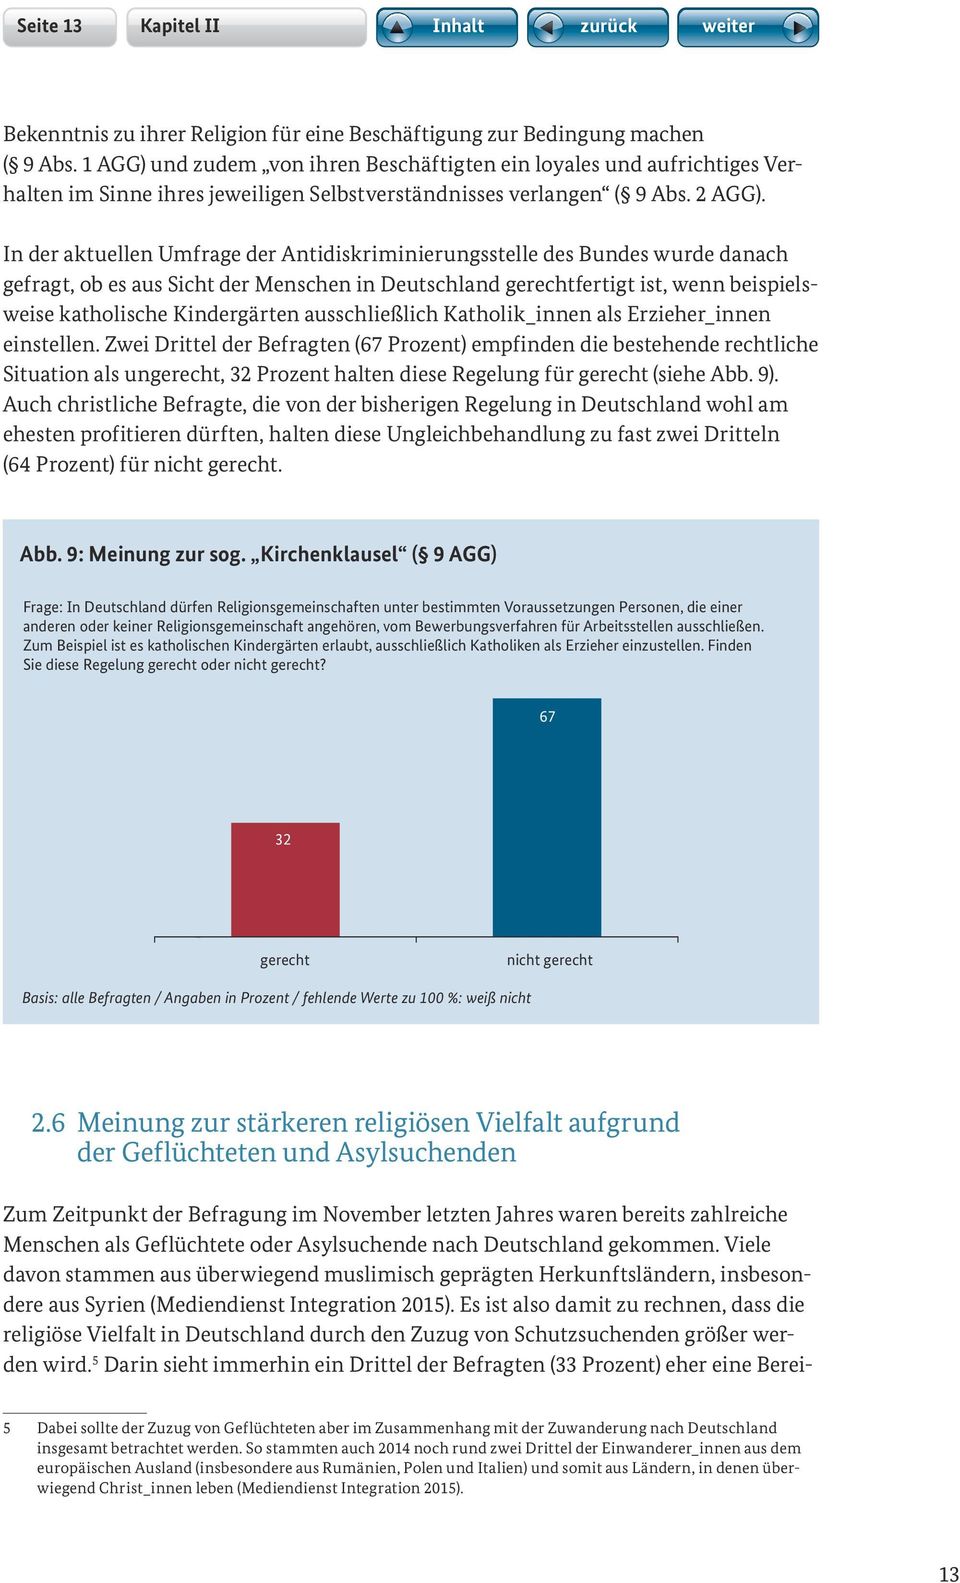 In der aktuellen Umfrage der Antidiskriminierungsstelle des Bundes wurde danach gefragt, ob es aus Sicht der Menschen in Deutschland gerechtfertigt ist, wenn beispielsweise katholische Kindergärten